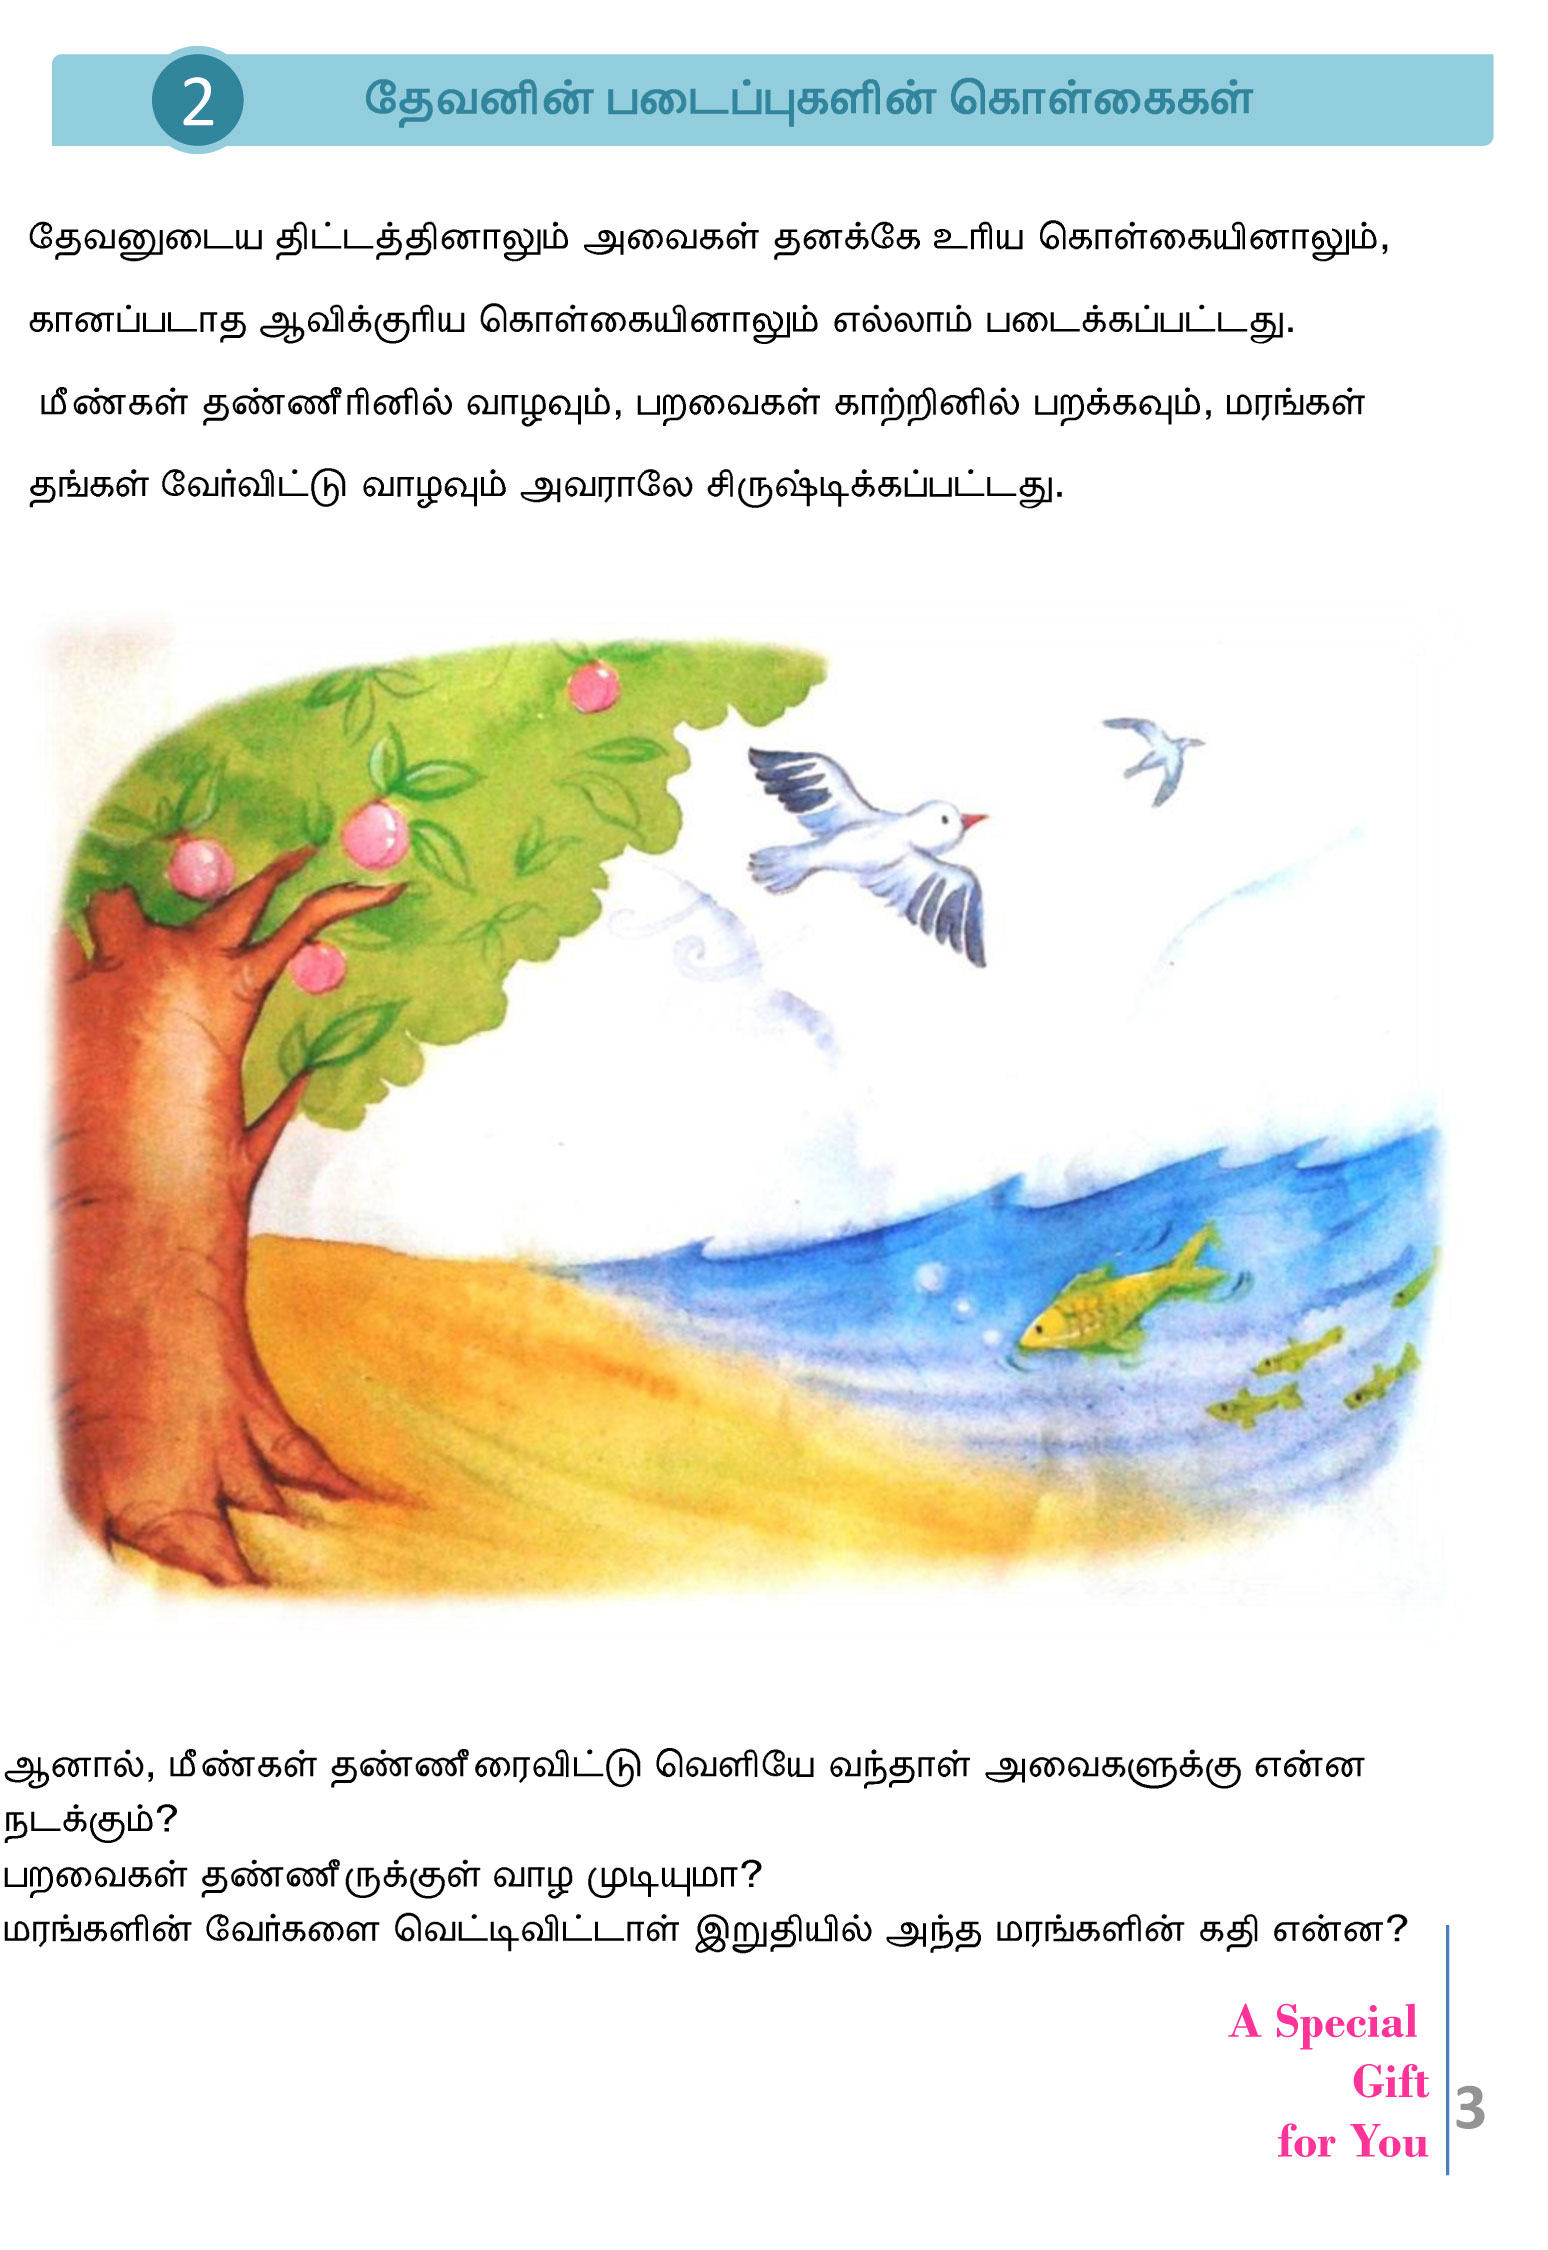 Tamil-Evangelism-Book-Pdf-3-03.jpg